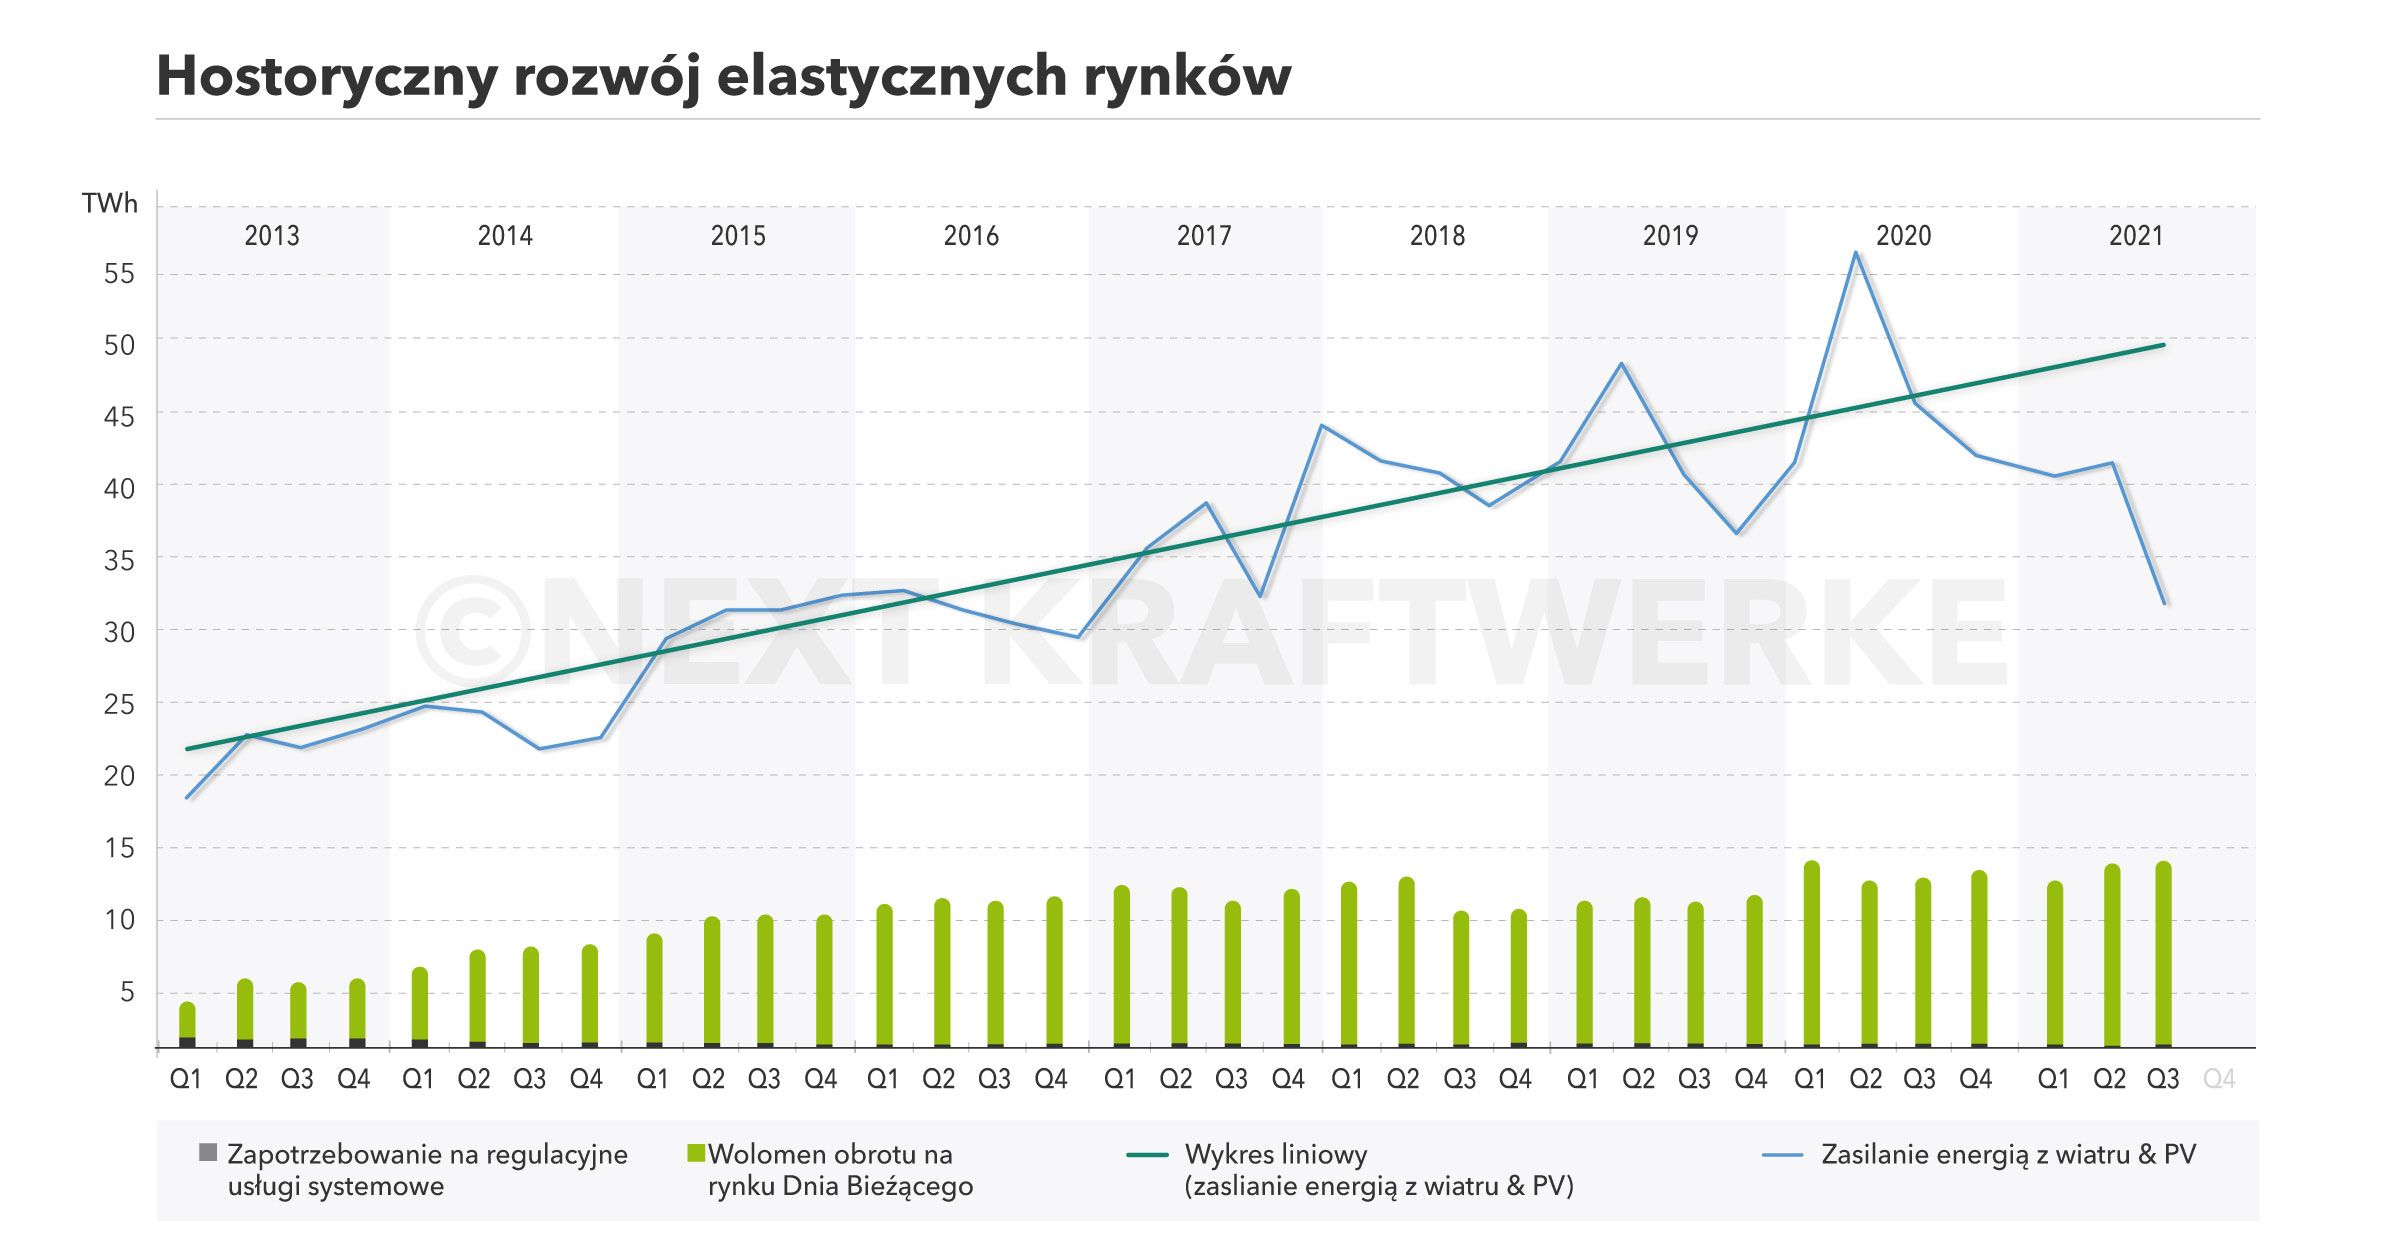 Wykres przedstawiający historyczny rozwój elastycznych rynków-Next Kraftwerke